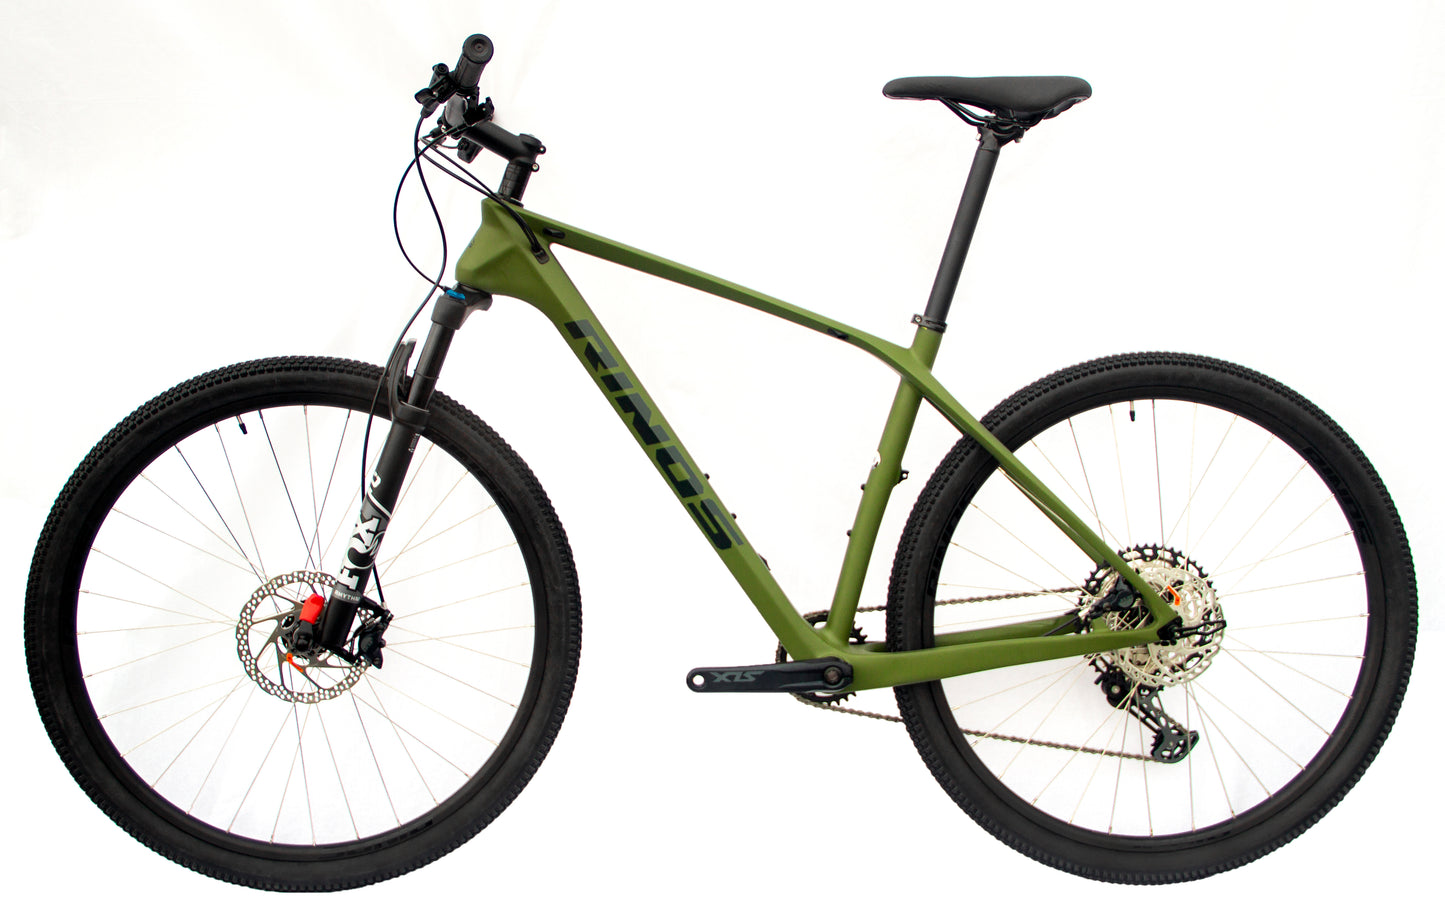 RINOS Gaia4.0 Karbonowy rower górski MTB Hardtail Shimano SLX 12 biegów FOX